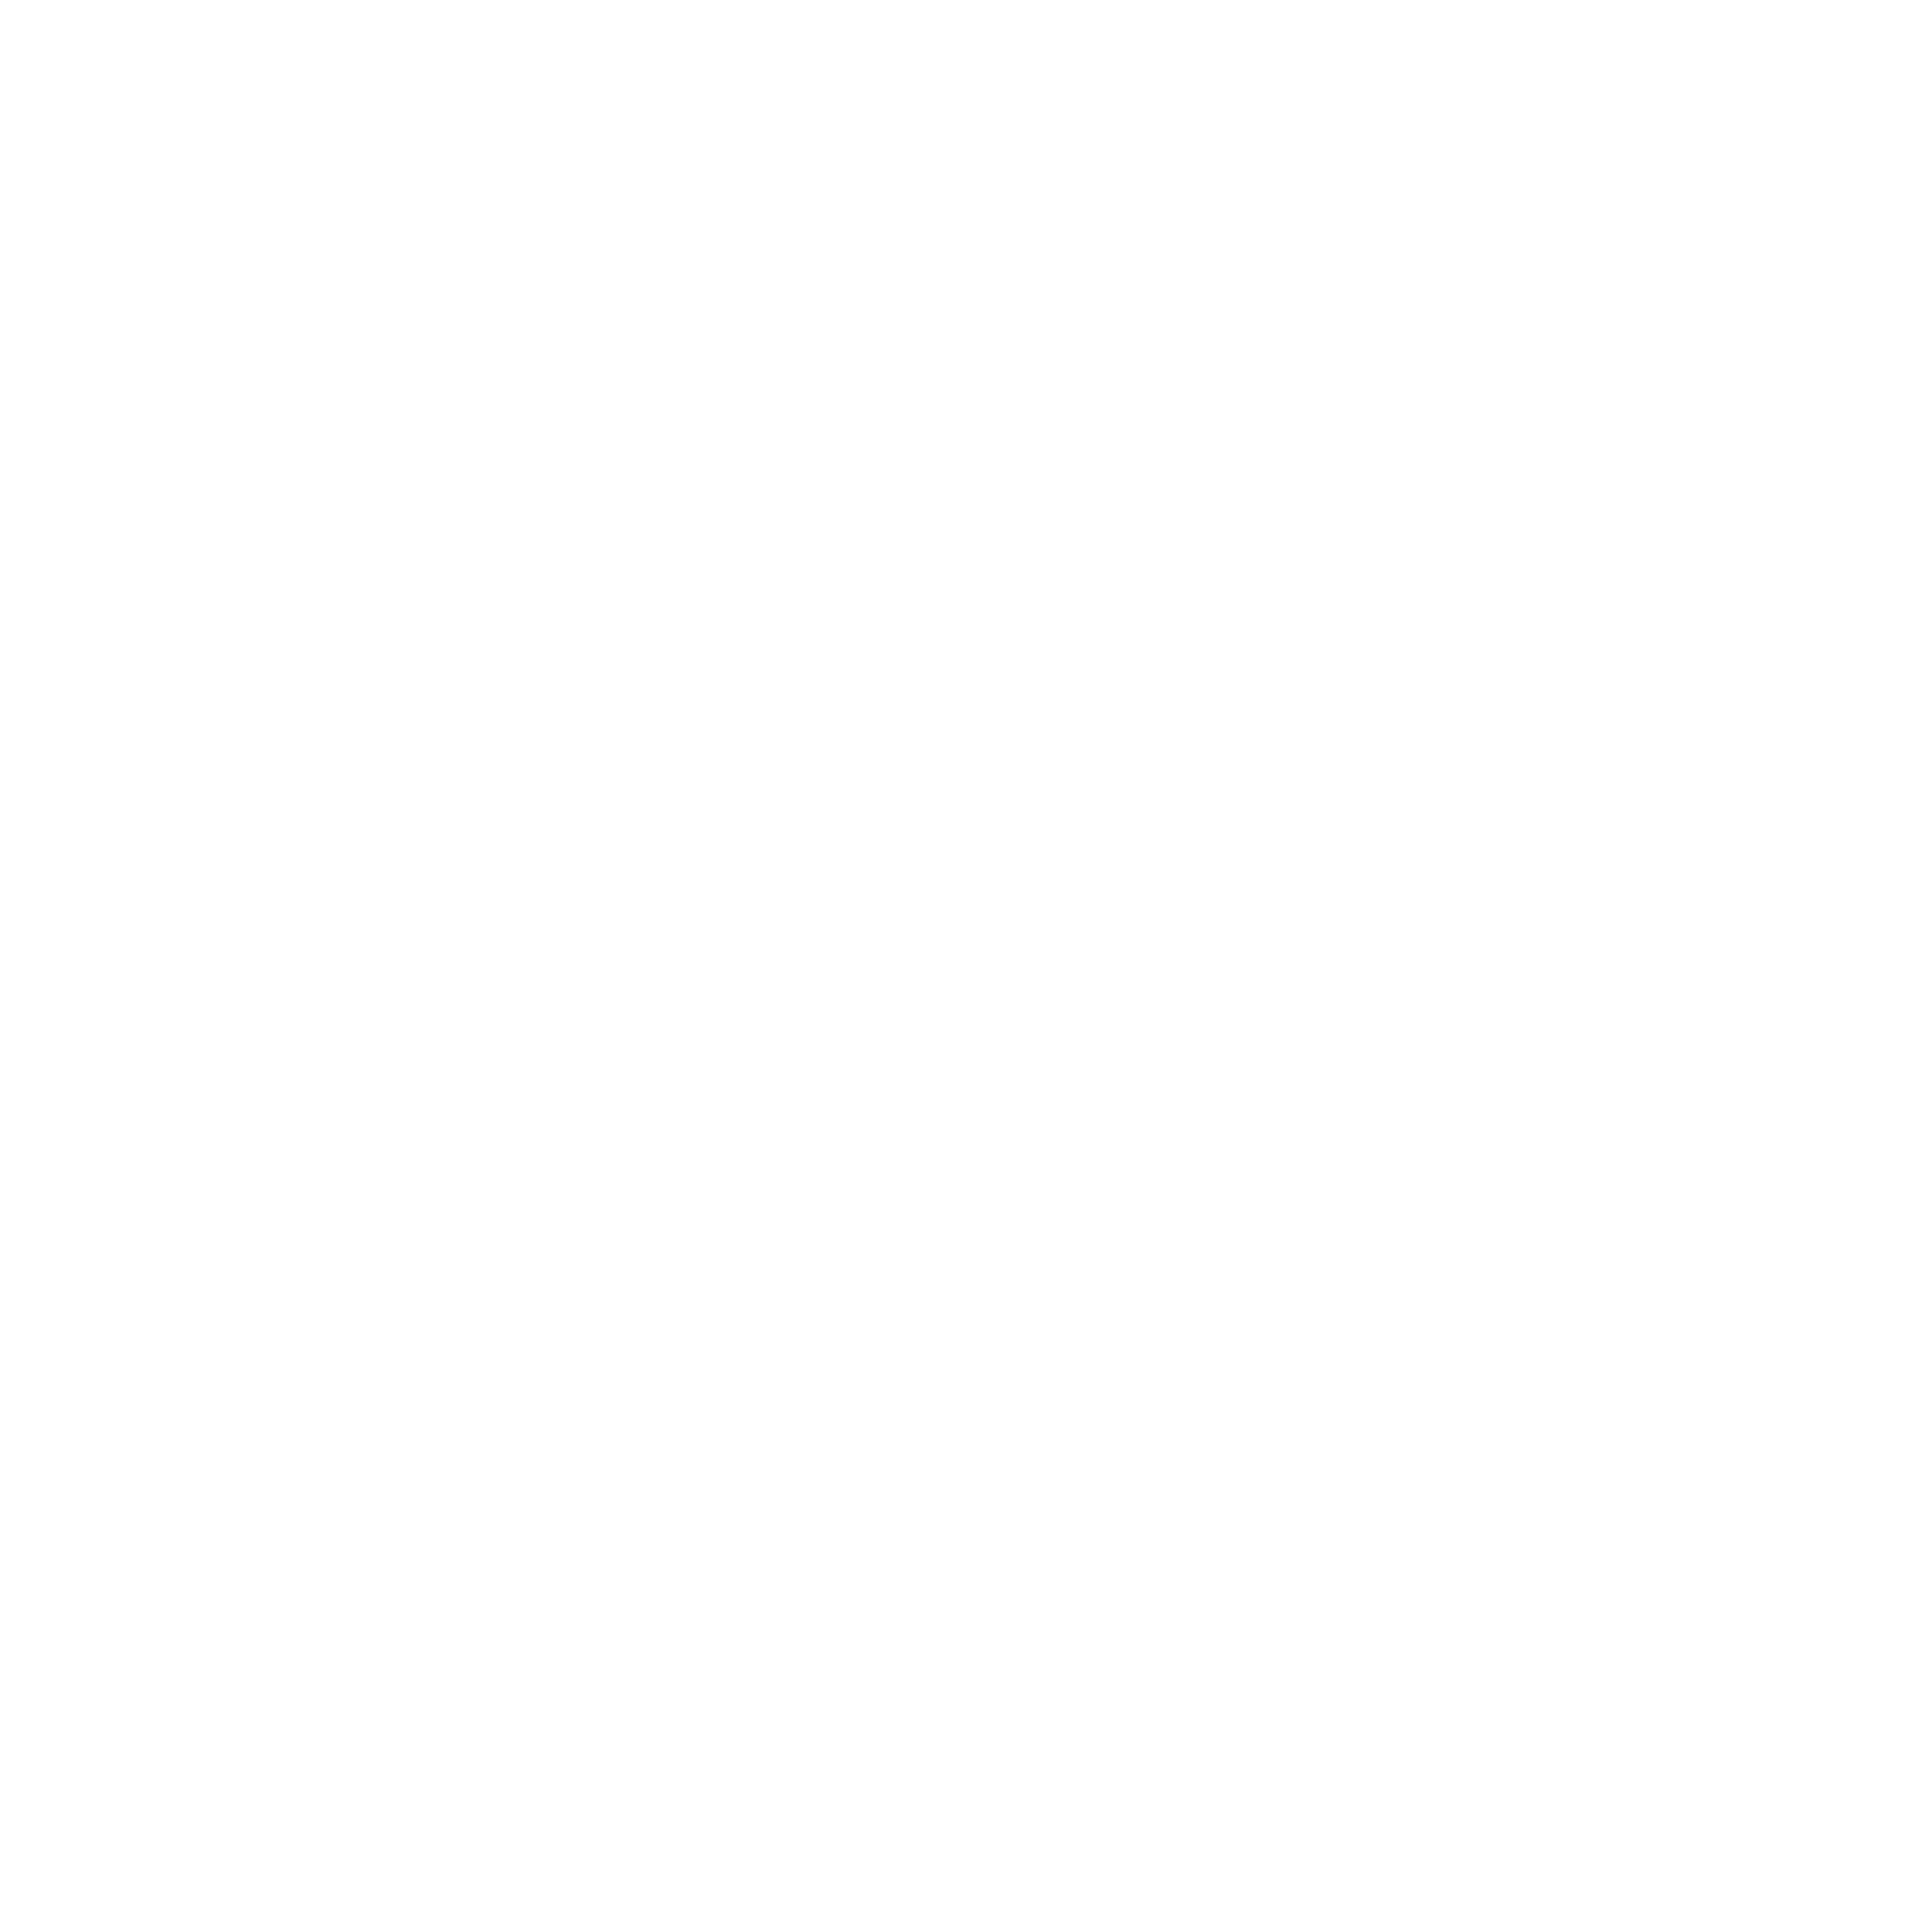 Groovin' Keys